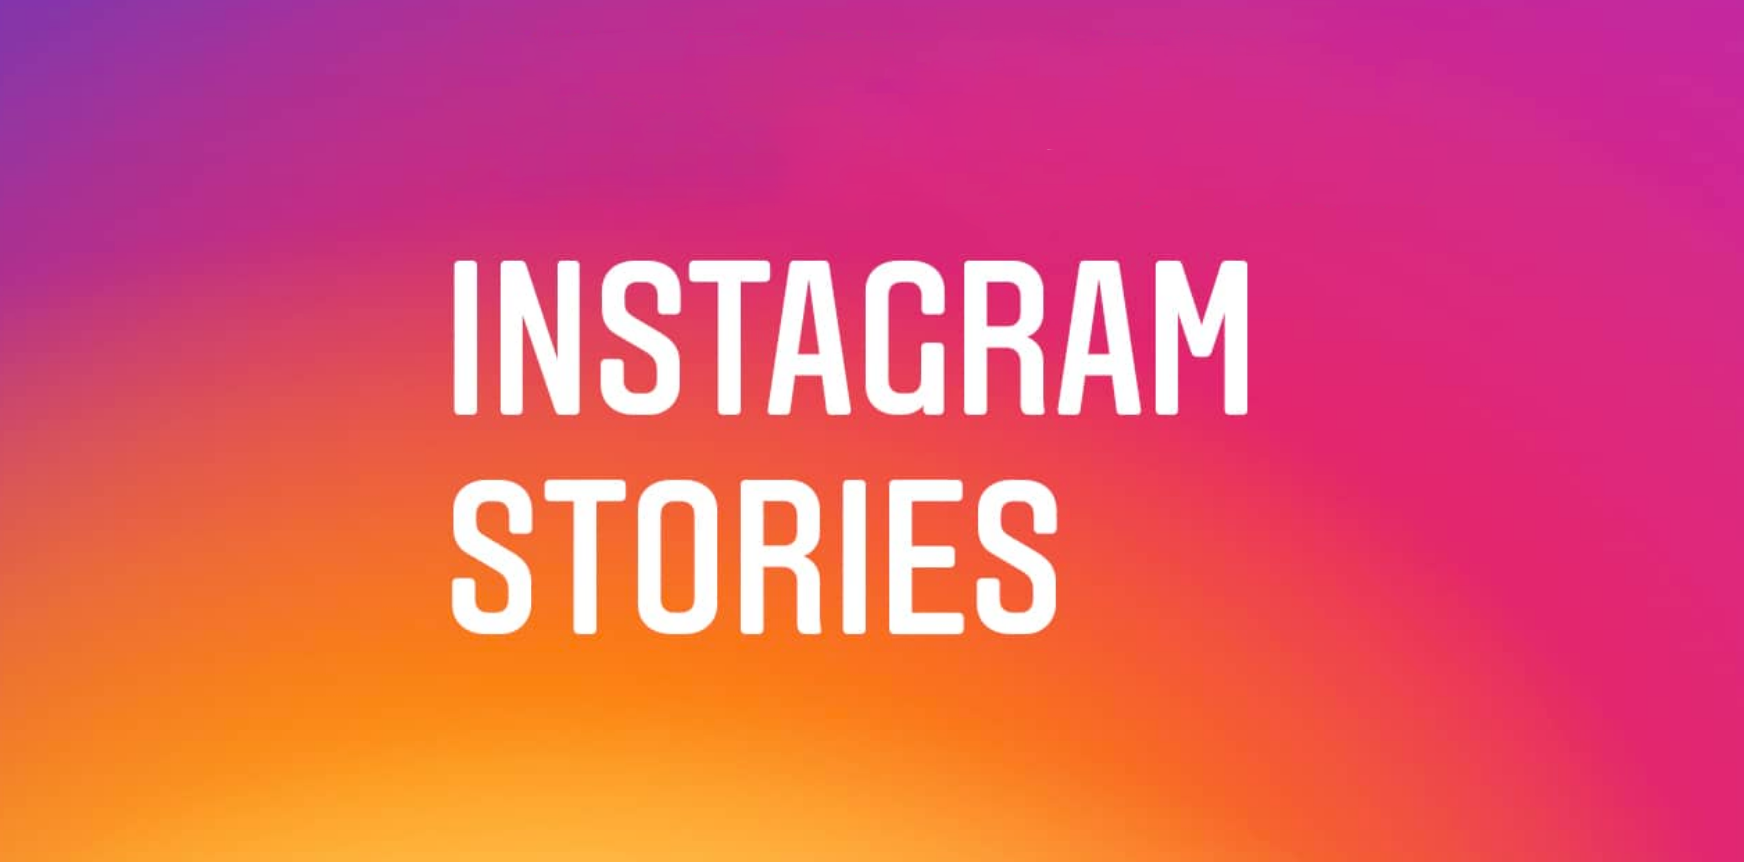 Bildergebnis für bilder Instagram stories